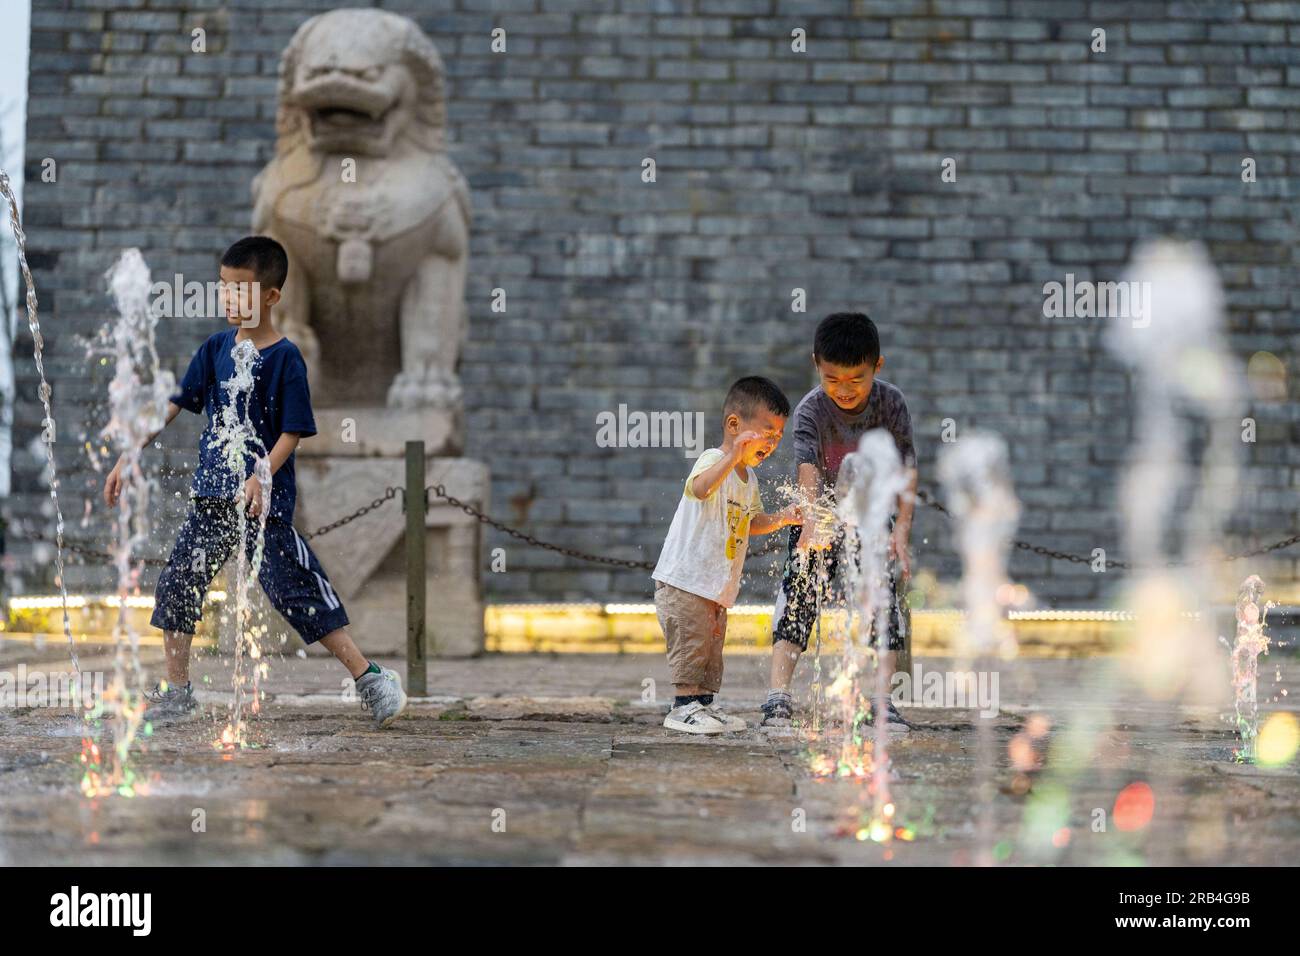 HEFEI, CHINA - 7. JULI 2023 - Kinder spielen mit Wasser, um sich an einem Brunnen auf einem Platz in Hefei, Provinz Anhui, China, abzukühlen, 7. Juli 2023. Stockfoto